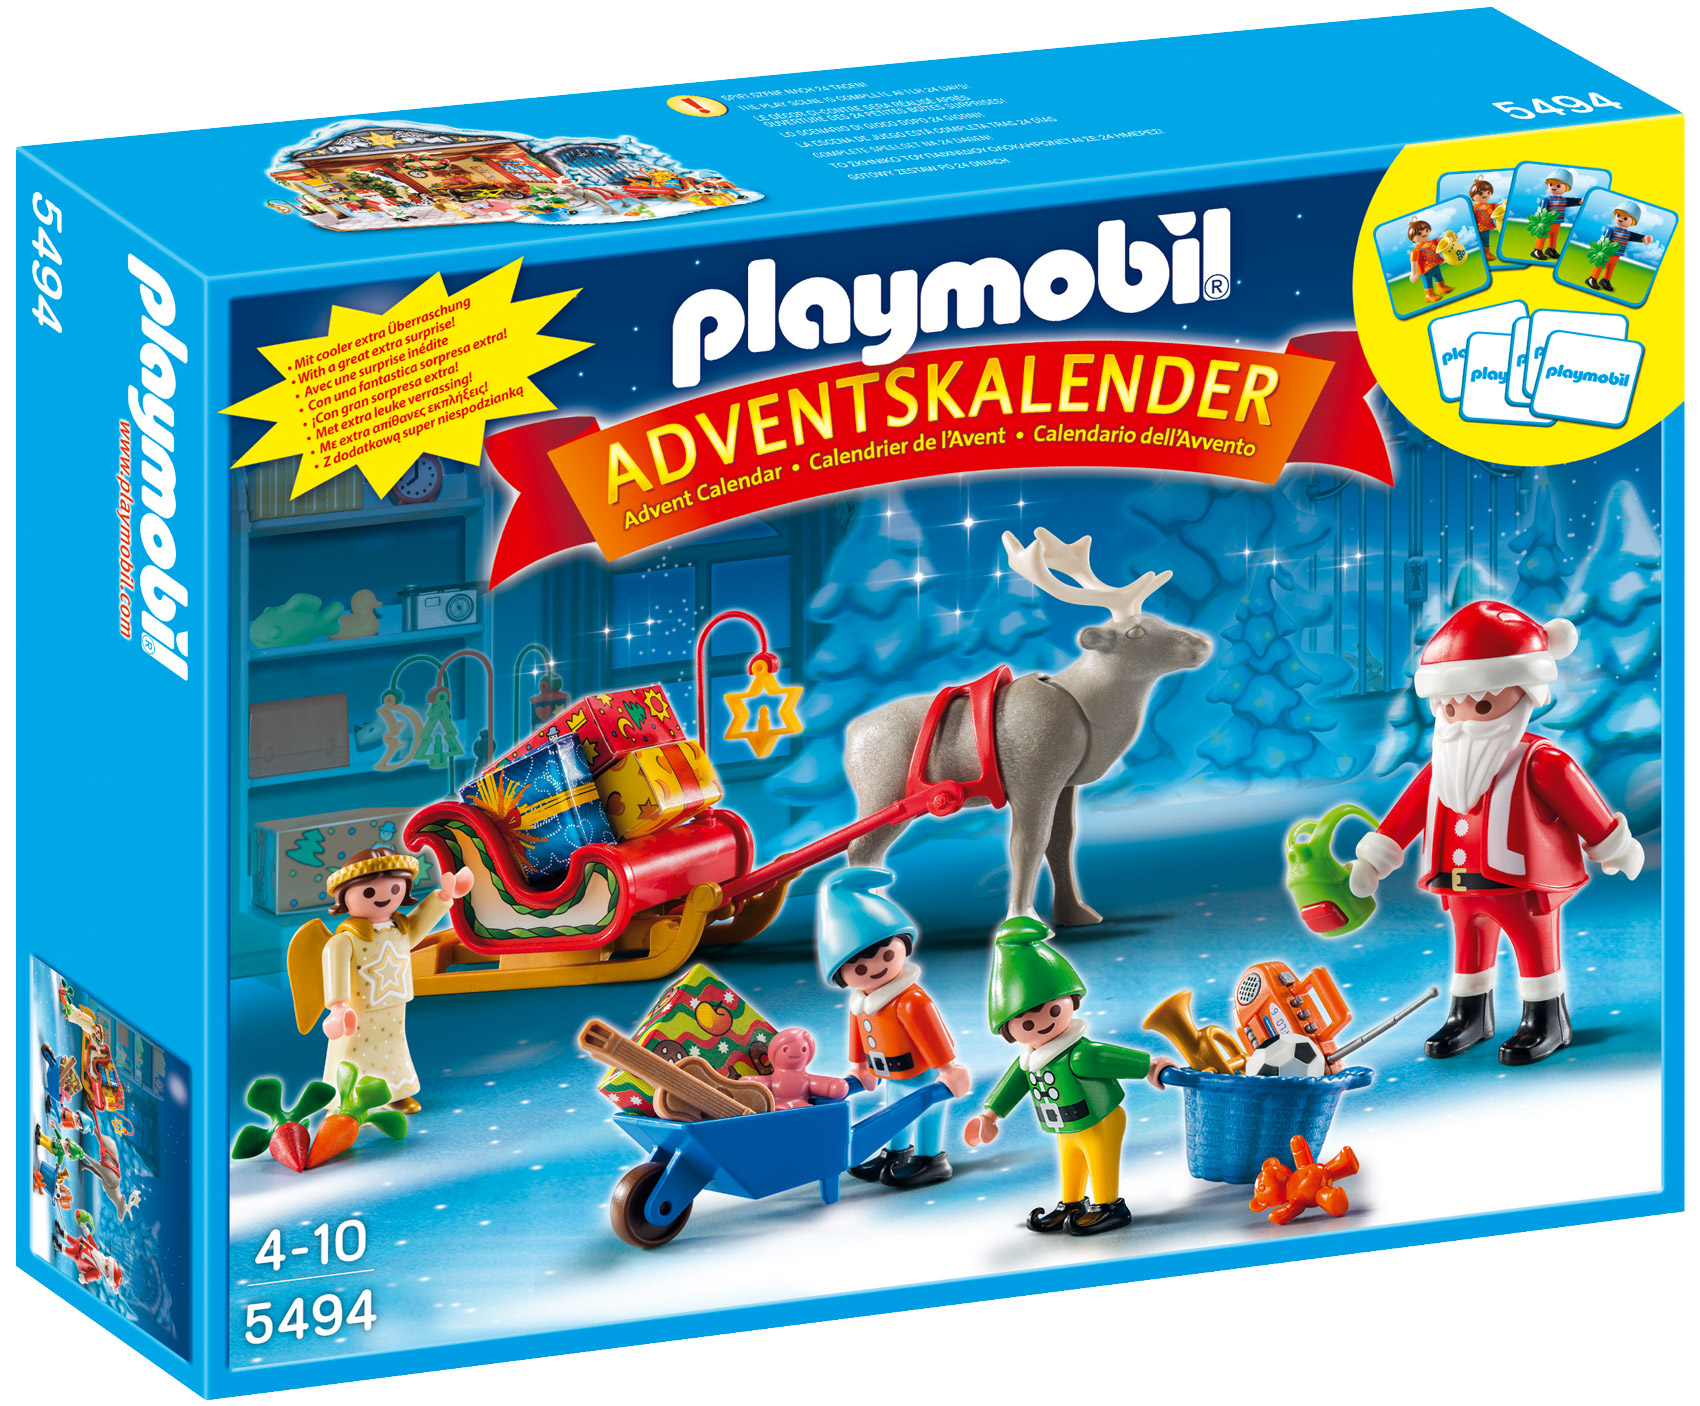 Playmobil Christmas 5494 pas cher, Calendrier de l'Avent Atelier